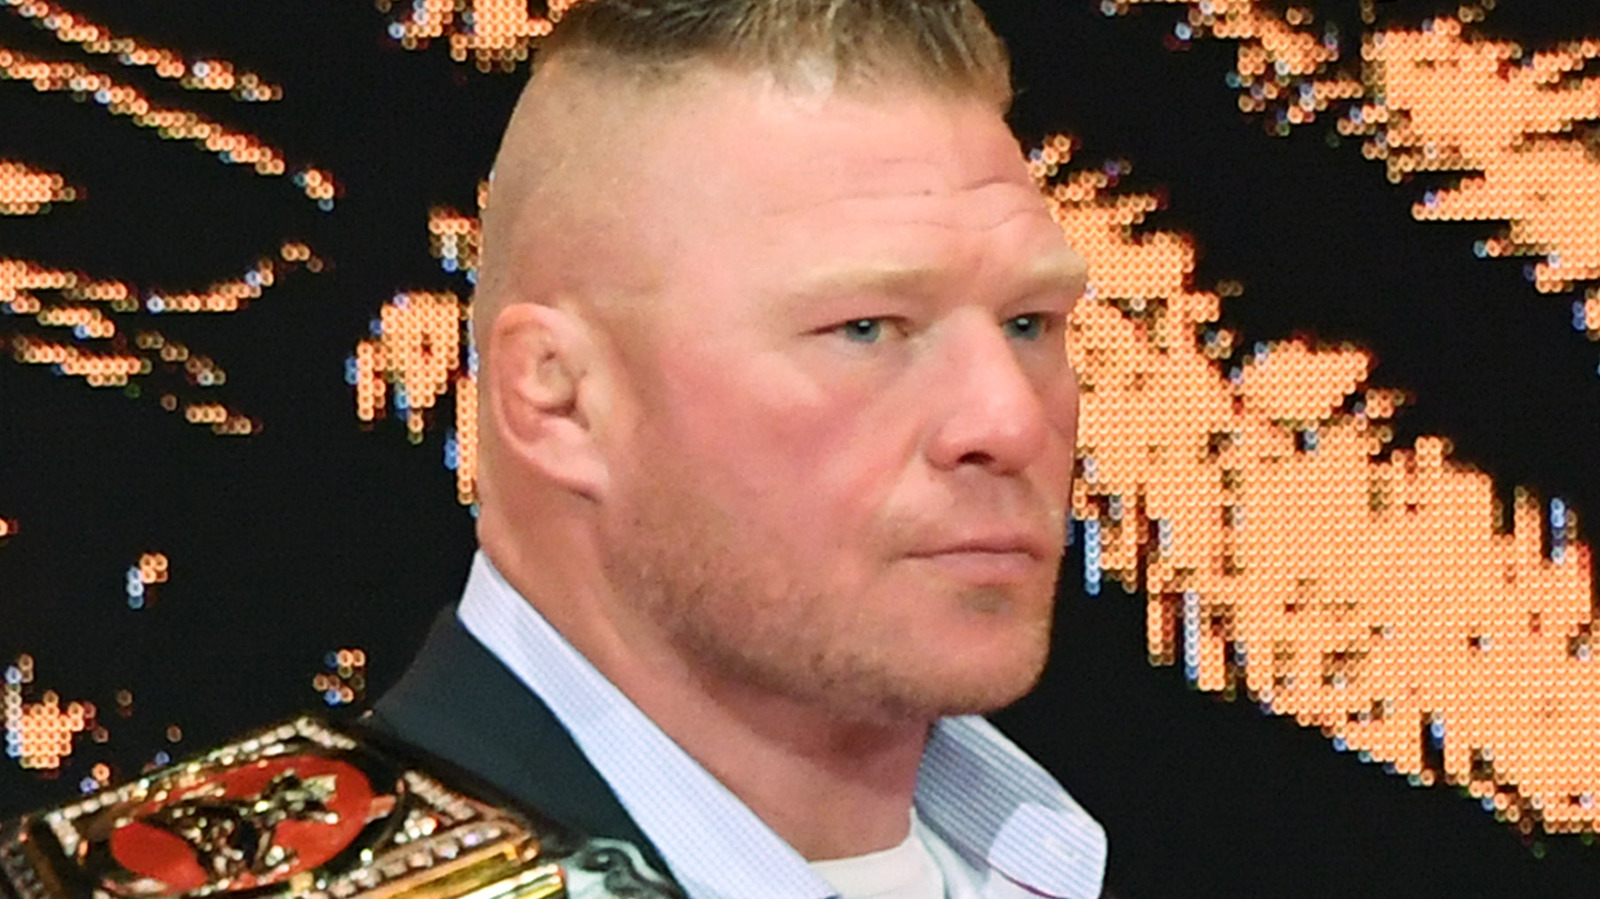 Brock Lesnar acude en ayuda de Cody Rhodes contra Roman Reigns, lucha por equipos programada para el evento principal de WWE Raw